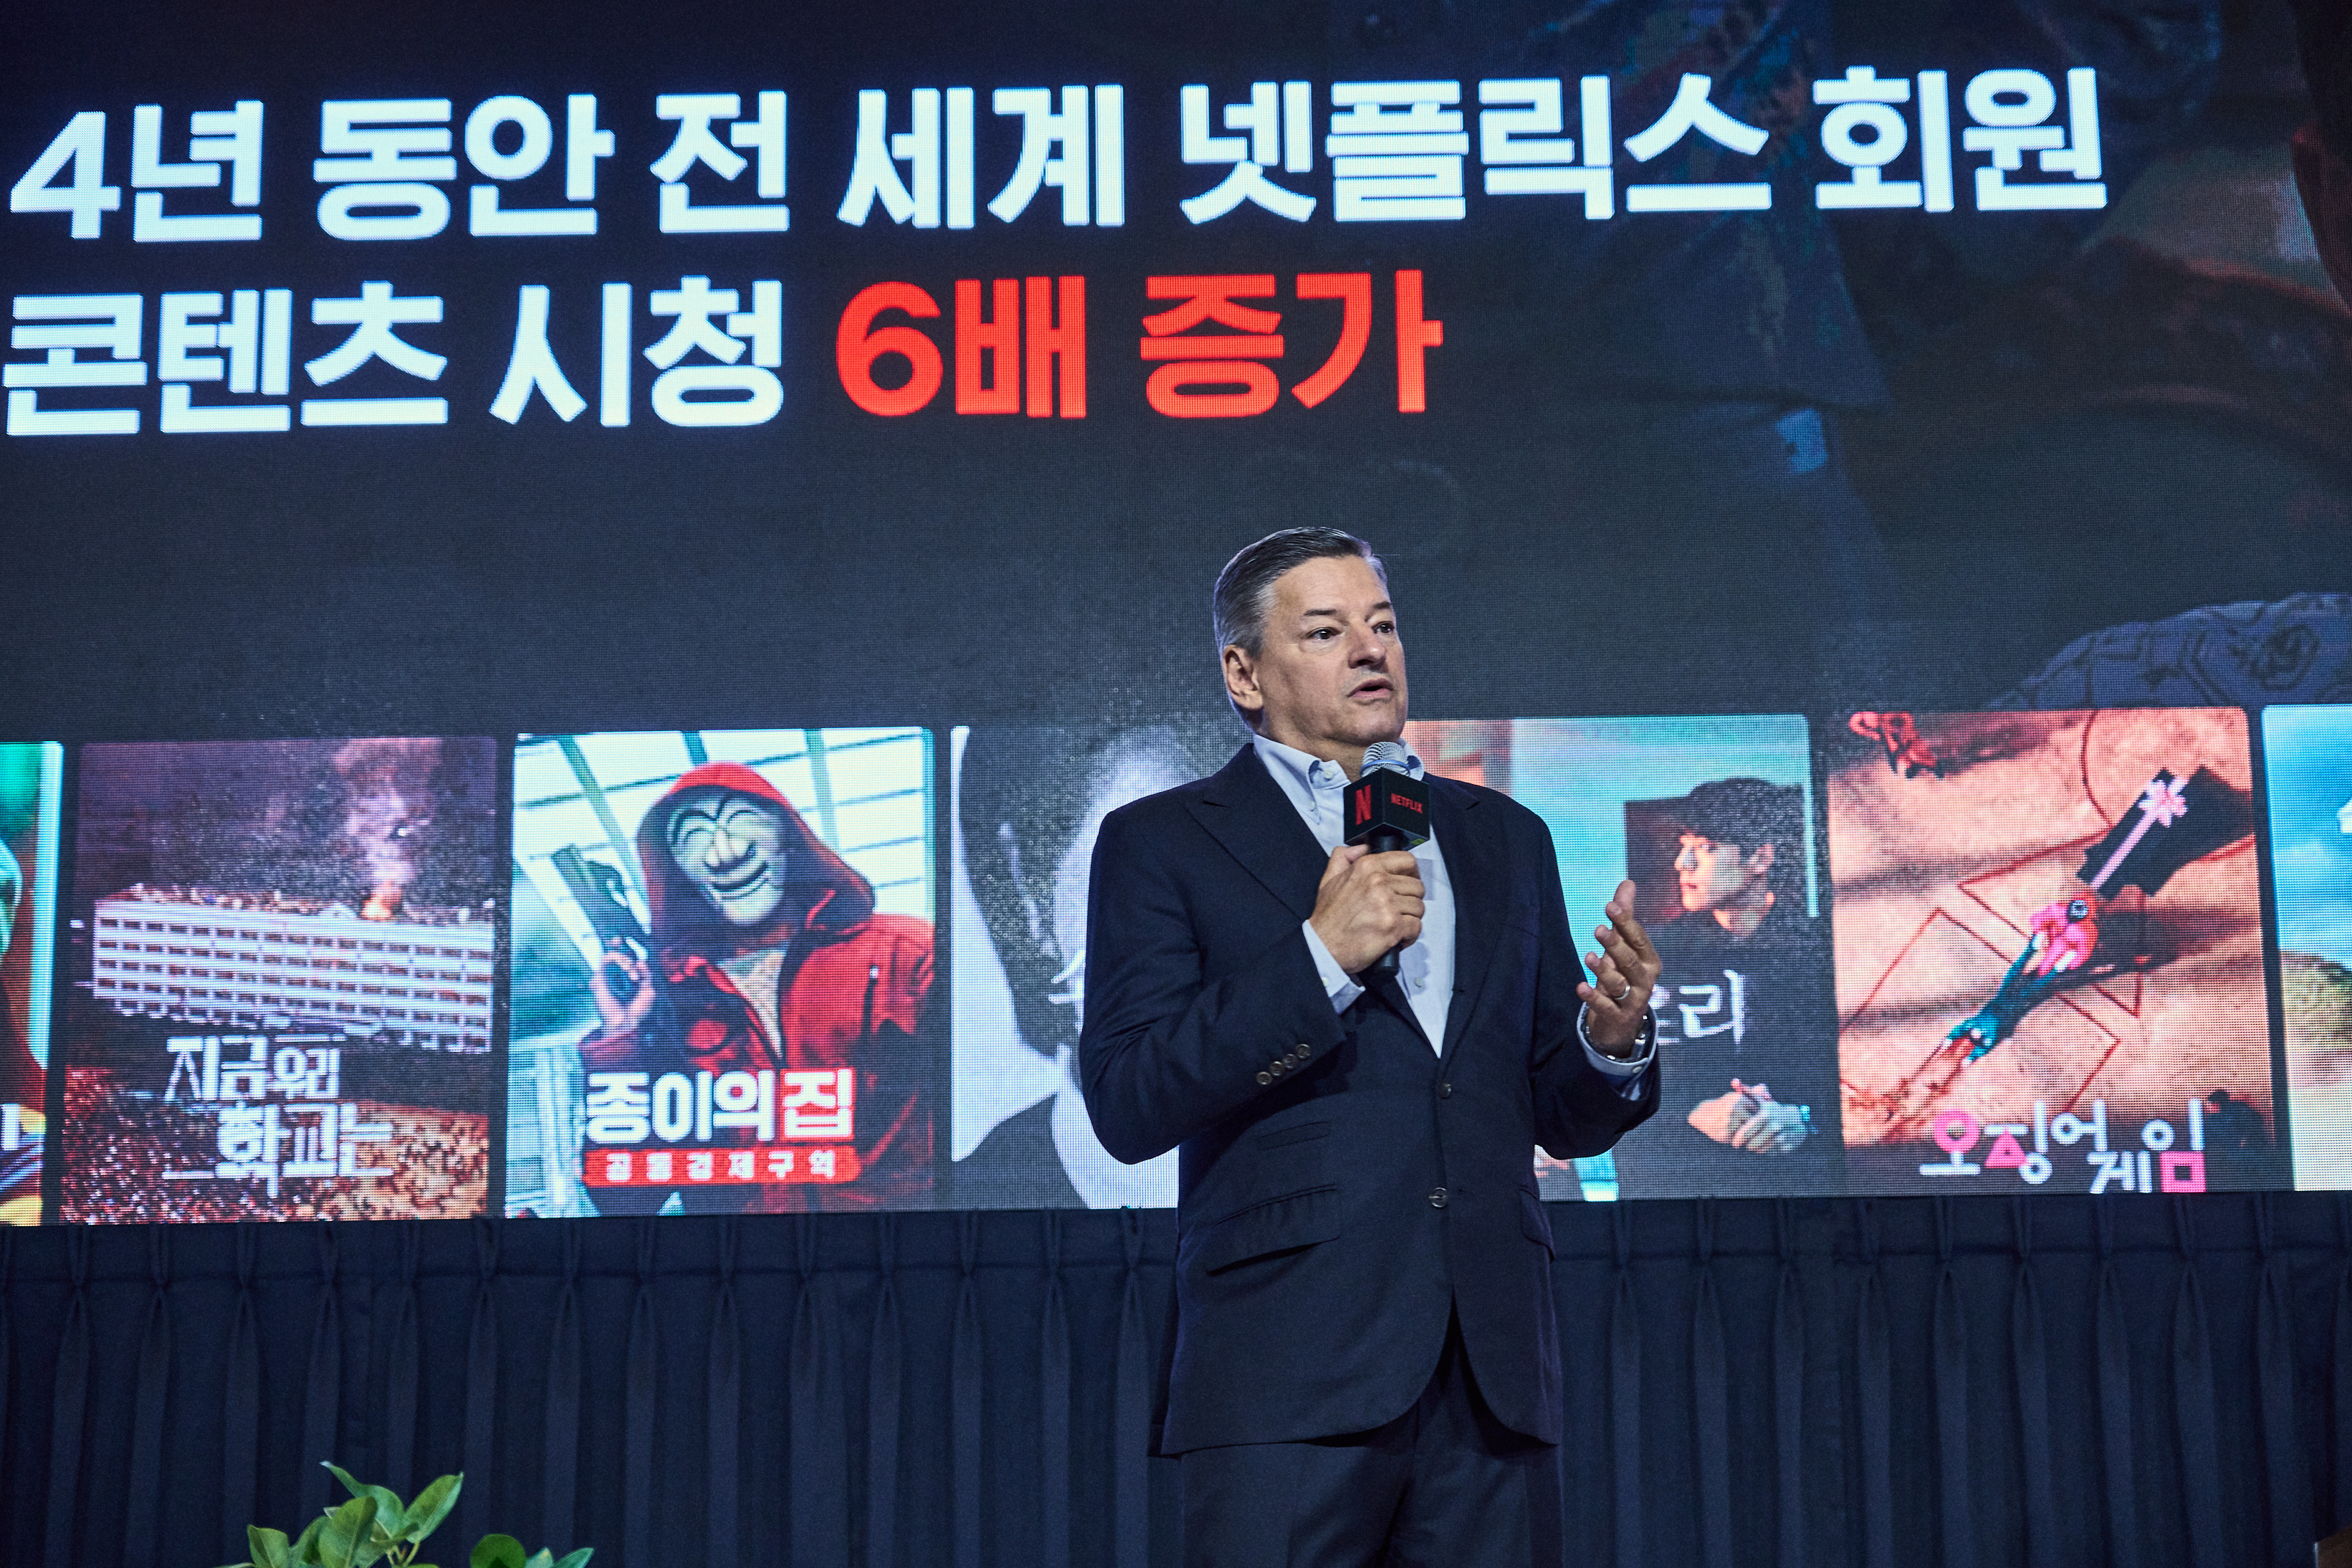 테드 서랜도스 넷플릭스 CEO가 22일 서울 종로구 포시즌스호텔서울에서 열린 ‘넷플릭스와 한국 콘텐츠 이야기 간담회’에서 한국 콘텐츠의 강점을 설명하고 있다.  그는 망 사용료 논란에 대해서는 별다른 언급을 하지 않았다. 넷플릭스 제공